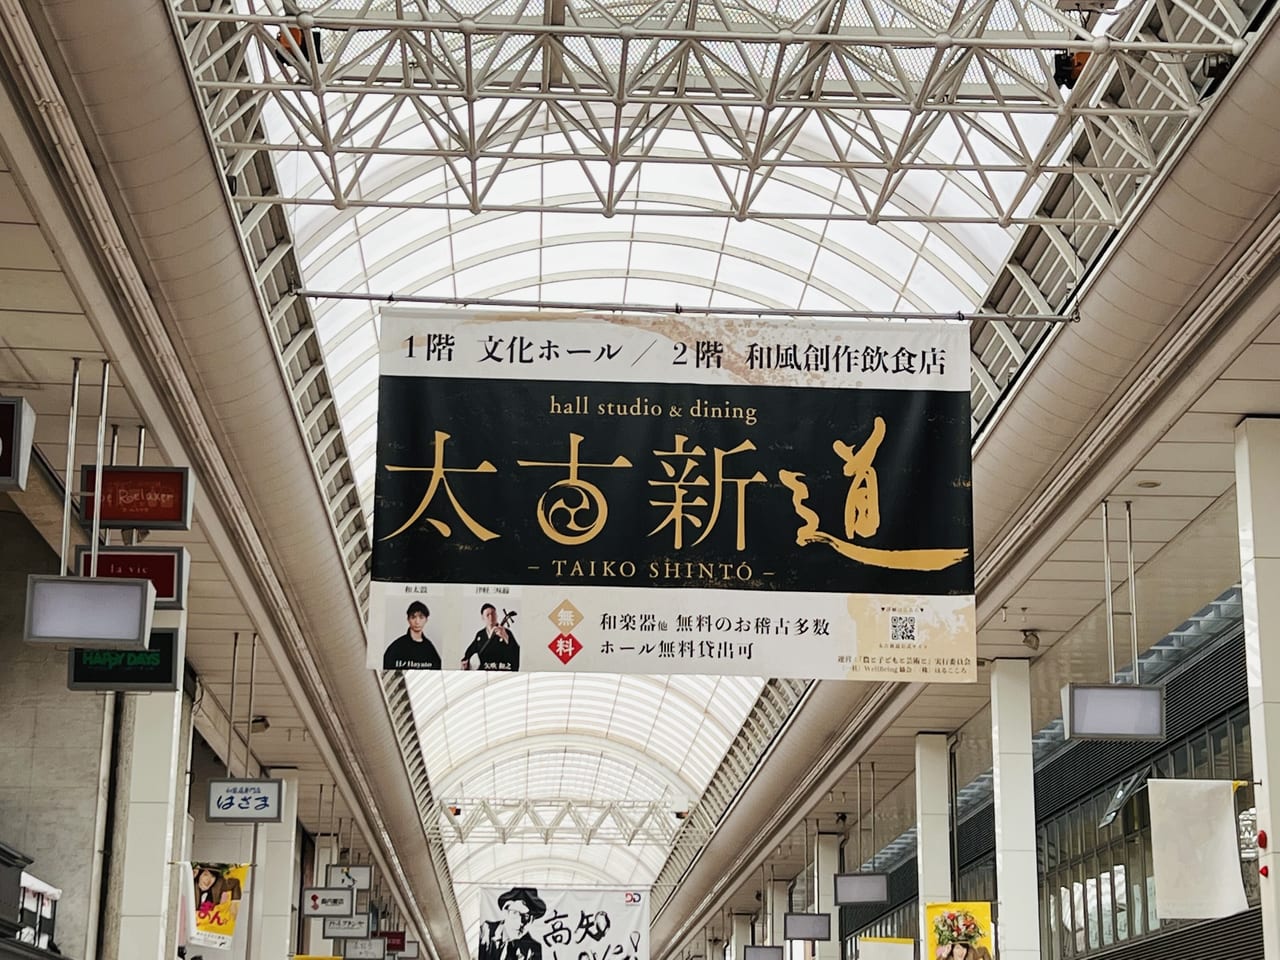 帯屋町商店街に吊るされた「太古新道―TAIKO SHINTO―」の垂れ幕